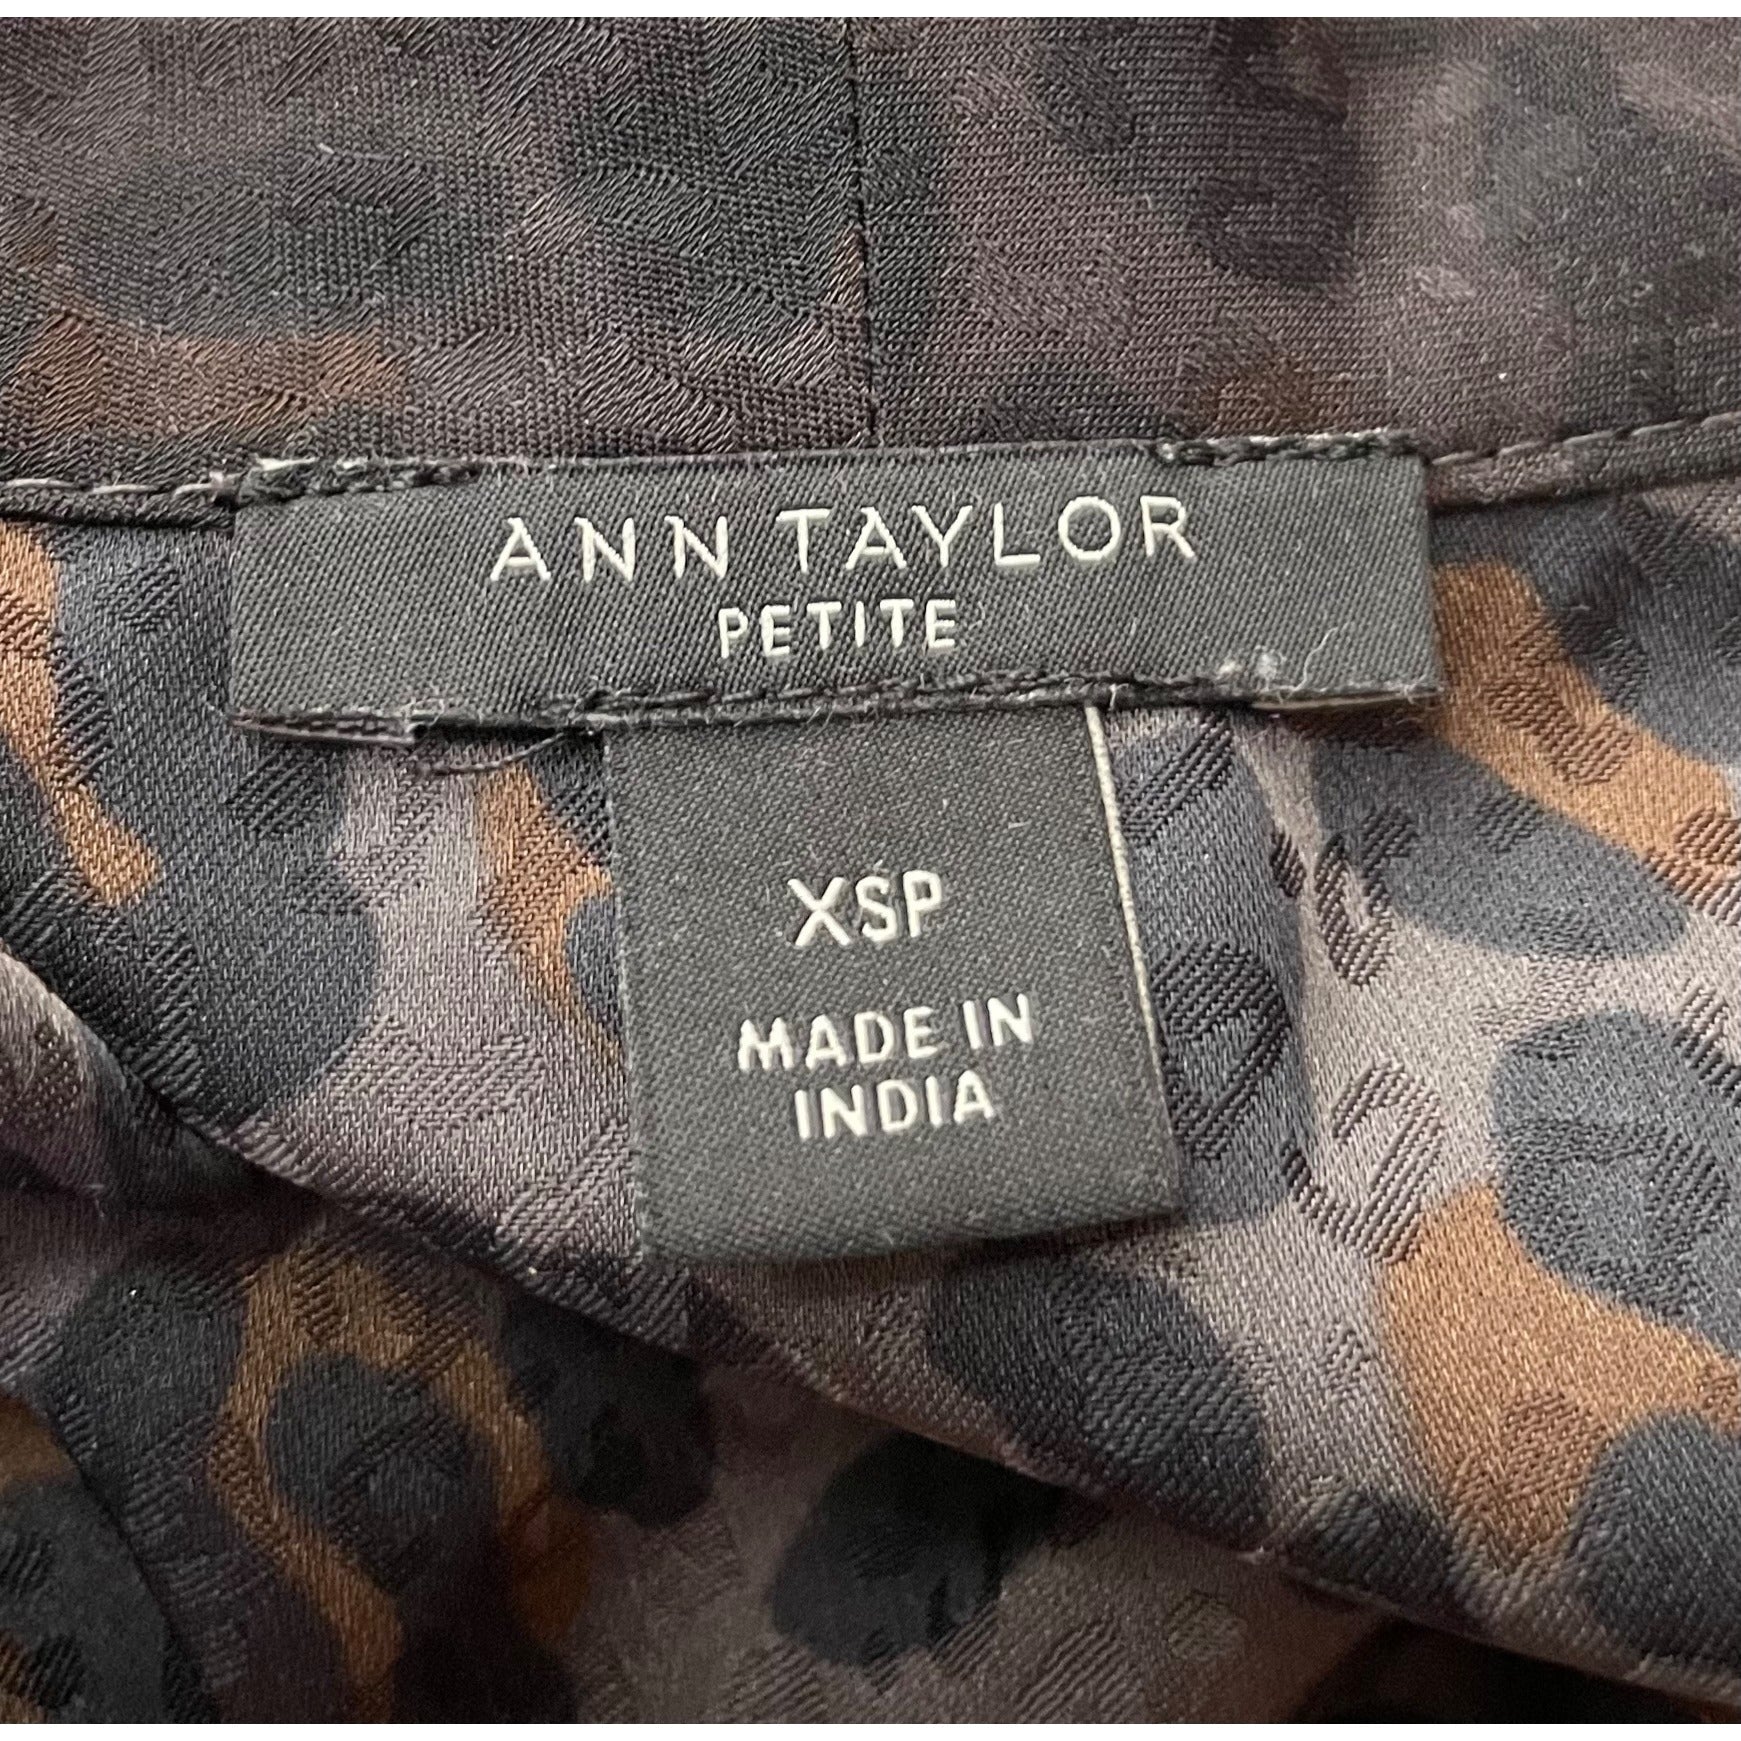 NWOT Ann Taylor Petite Women’s XSP Sheer Leopard Print Gray/Black/Brown Blouse W/ Sash